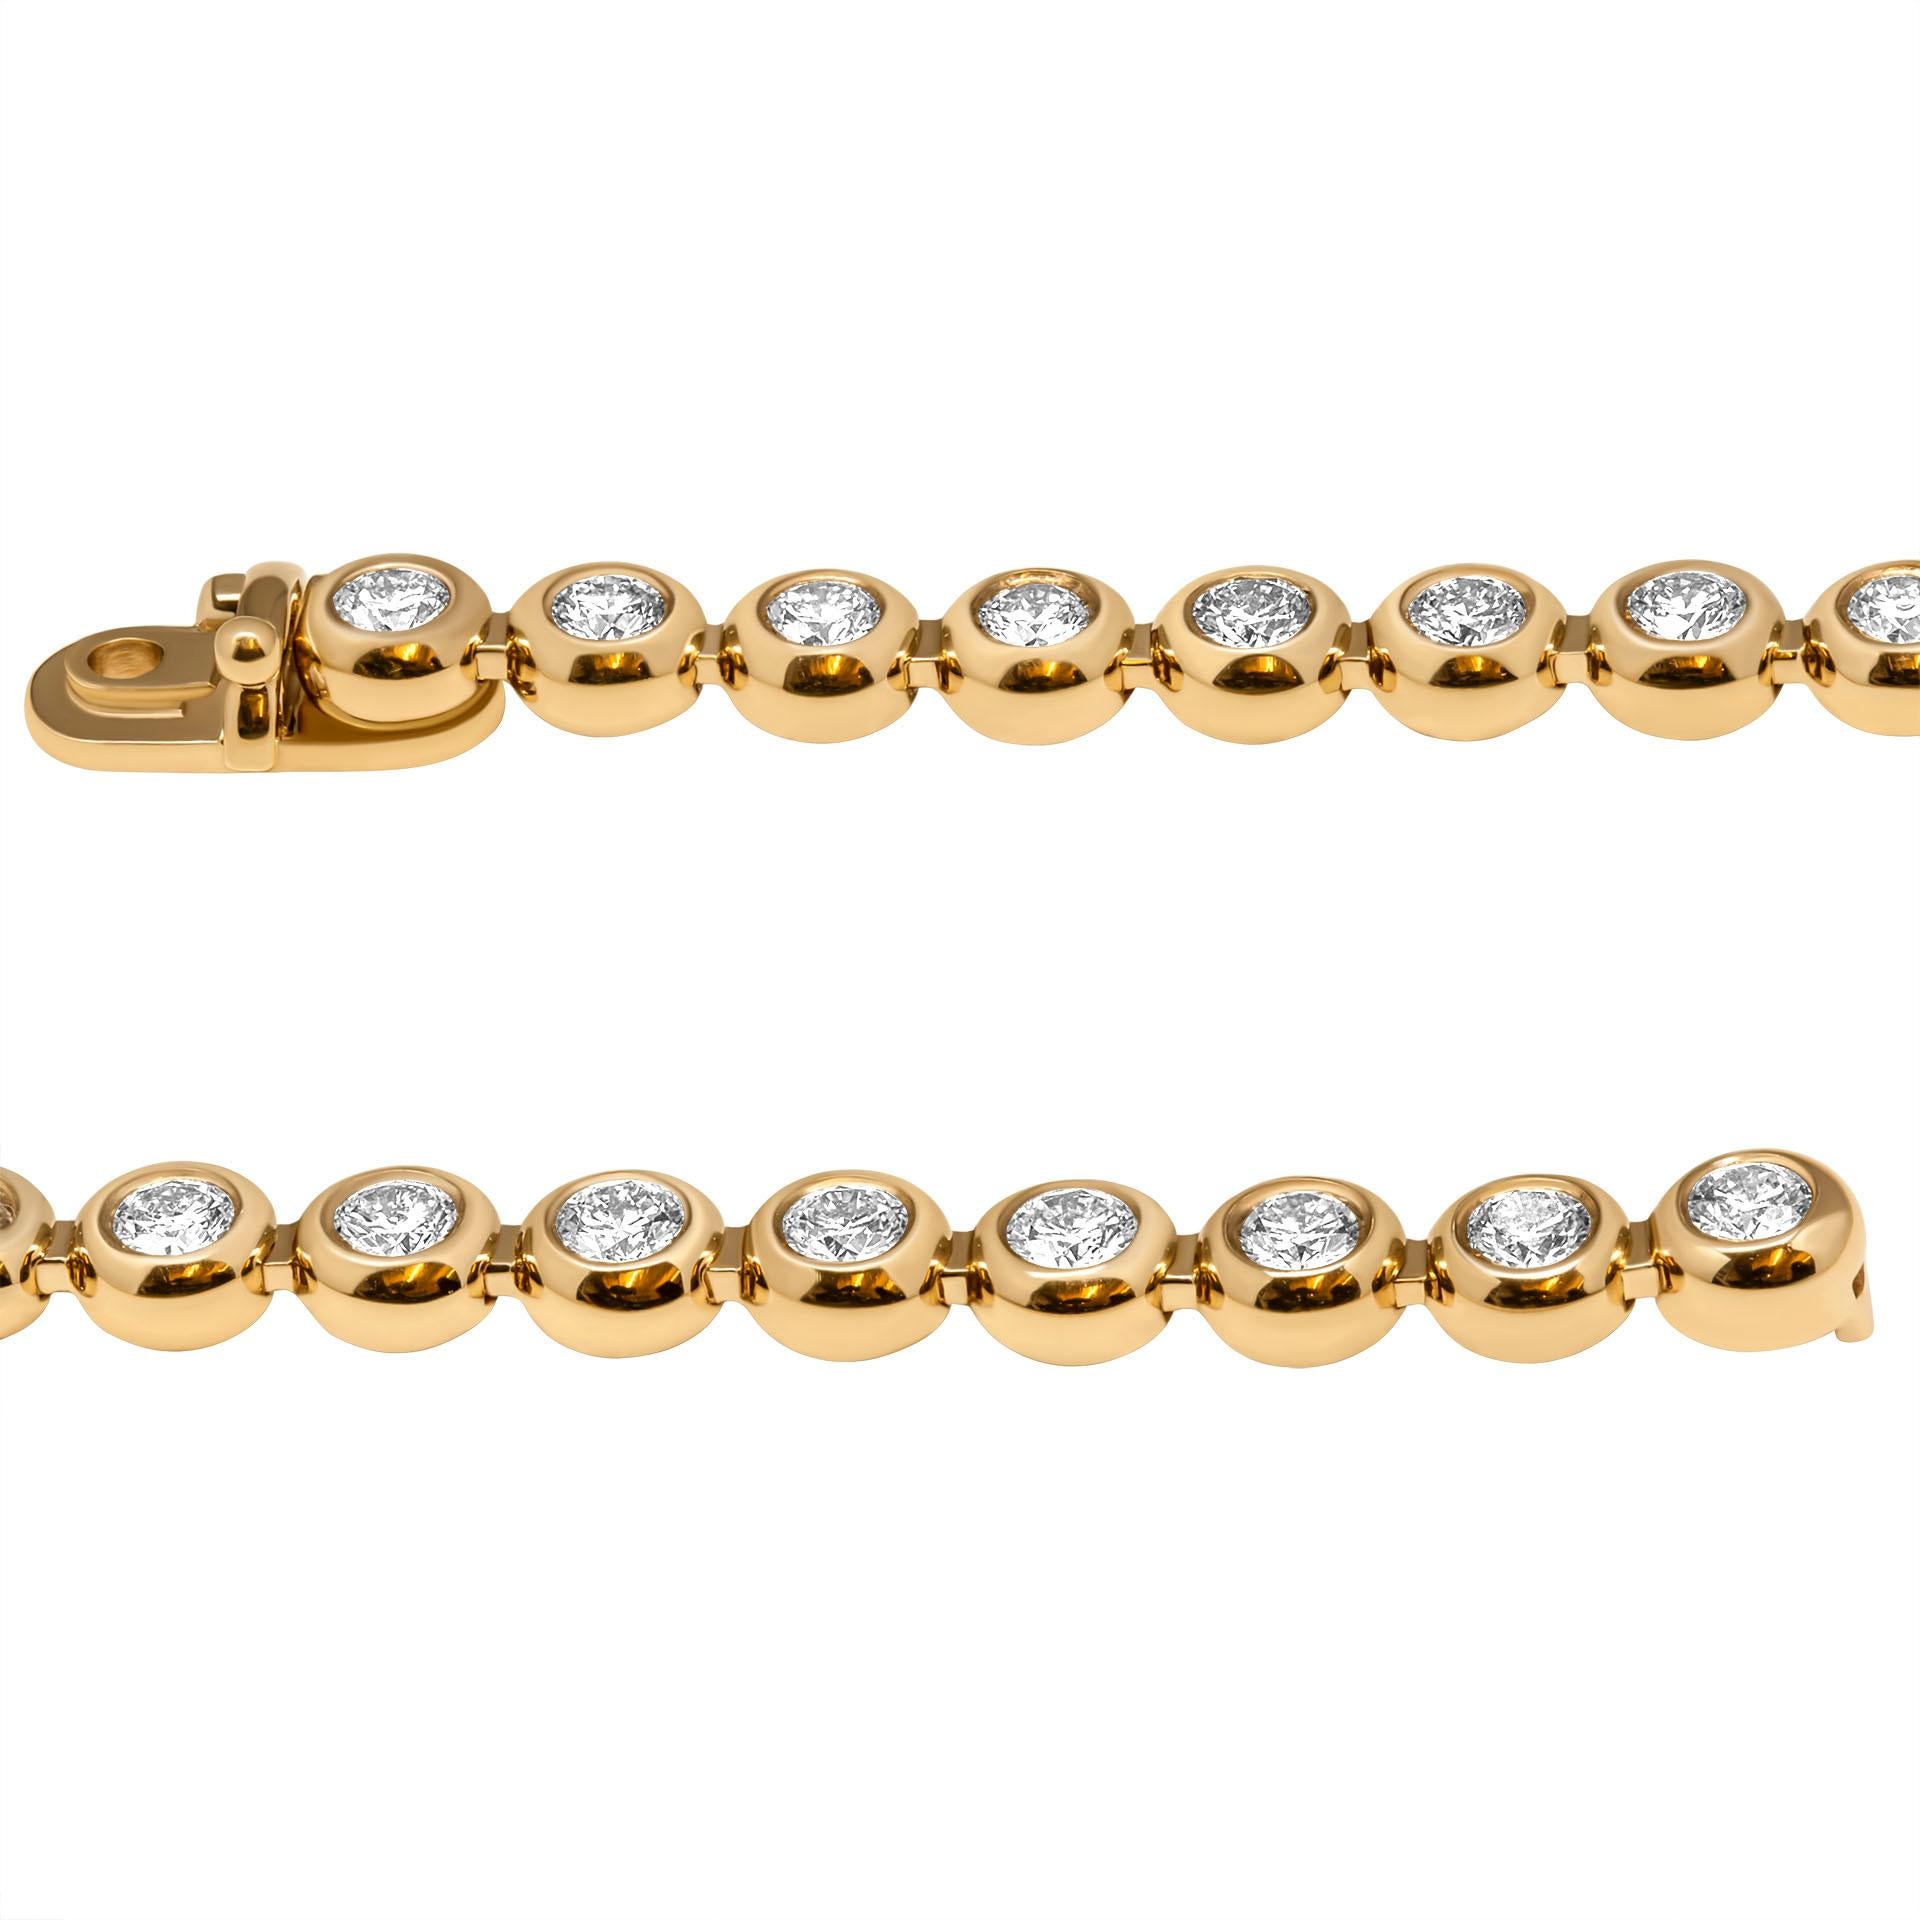 Tennis-Halskette mit Diamantbesatz aus 14K Gelbgold
82 runde Diamanten F Farbe VS Reinheit 
Gesamtgewicht 8,62cts
Gesamtlänge: 17.50 Zoll

